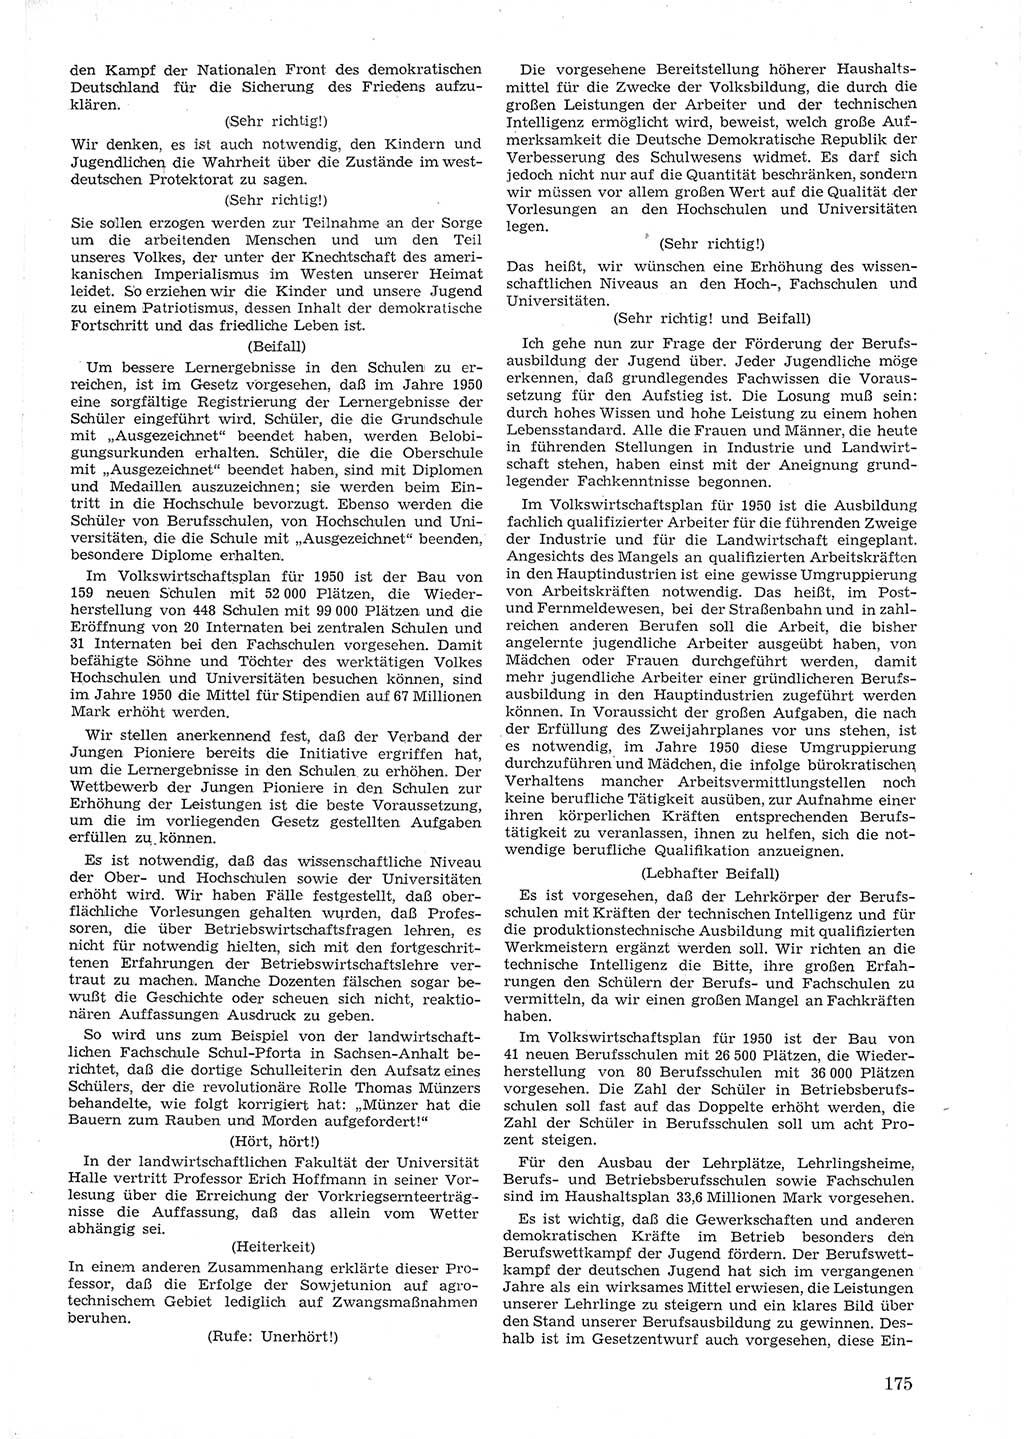 Provisorische Volkskammer (VK) der Deutschen Demokratischen Republik (DDR) 1949-1950, Dokument 187 (Prov. VK DDR 1949-1950, Dok. 187)